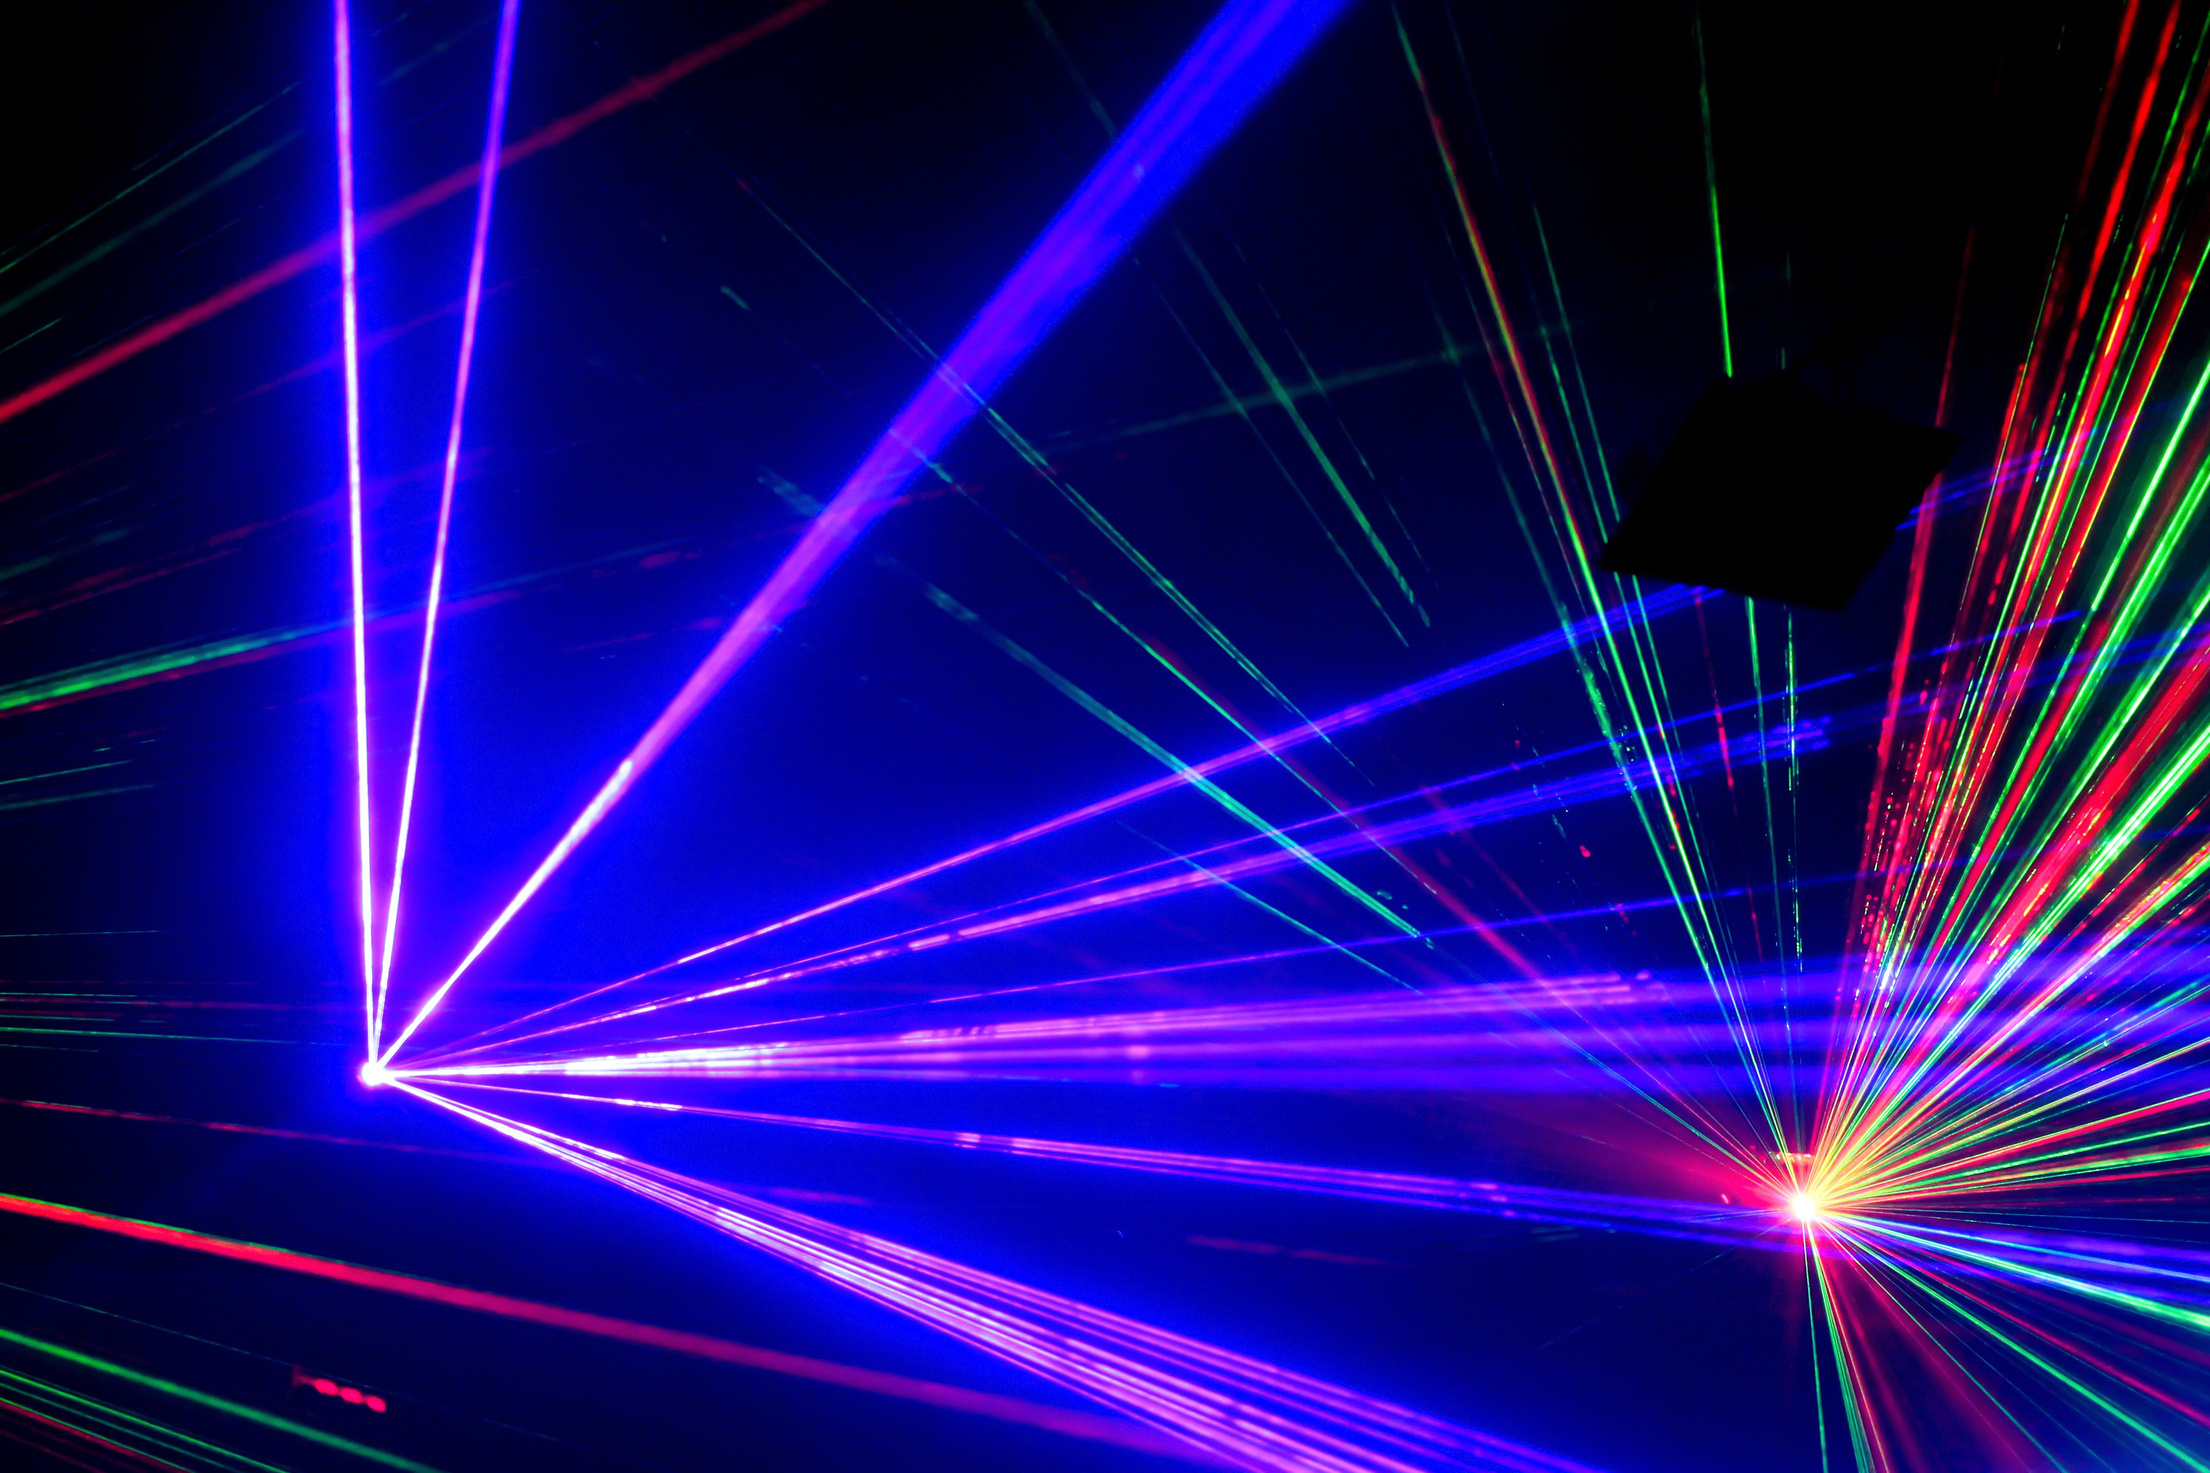 aser light in nightclub